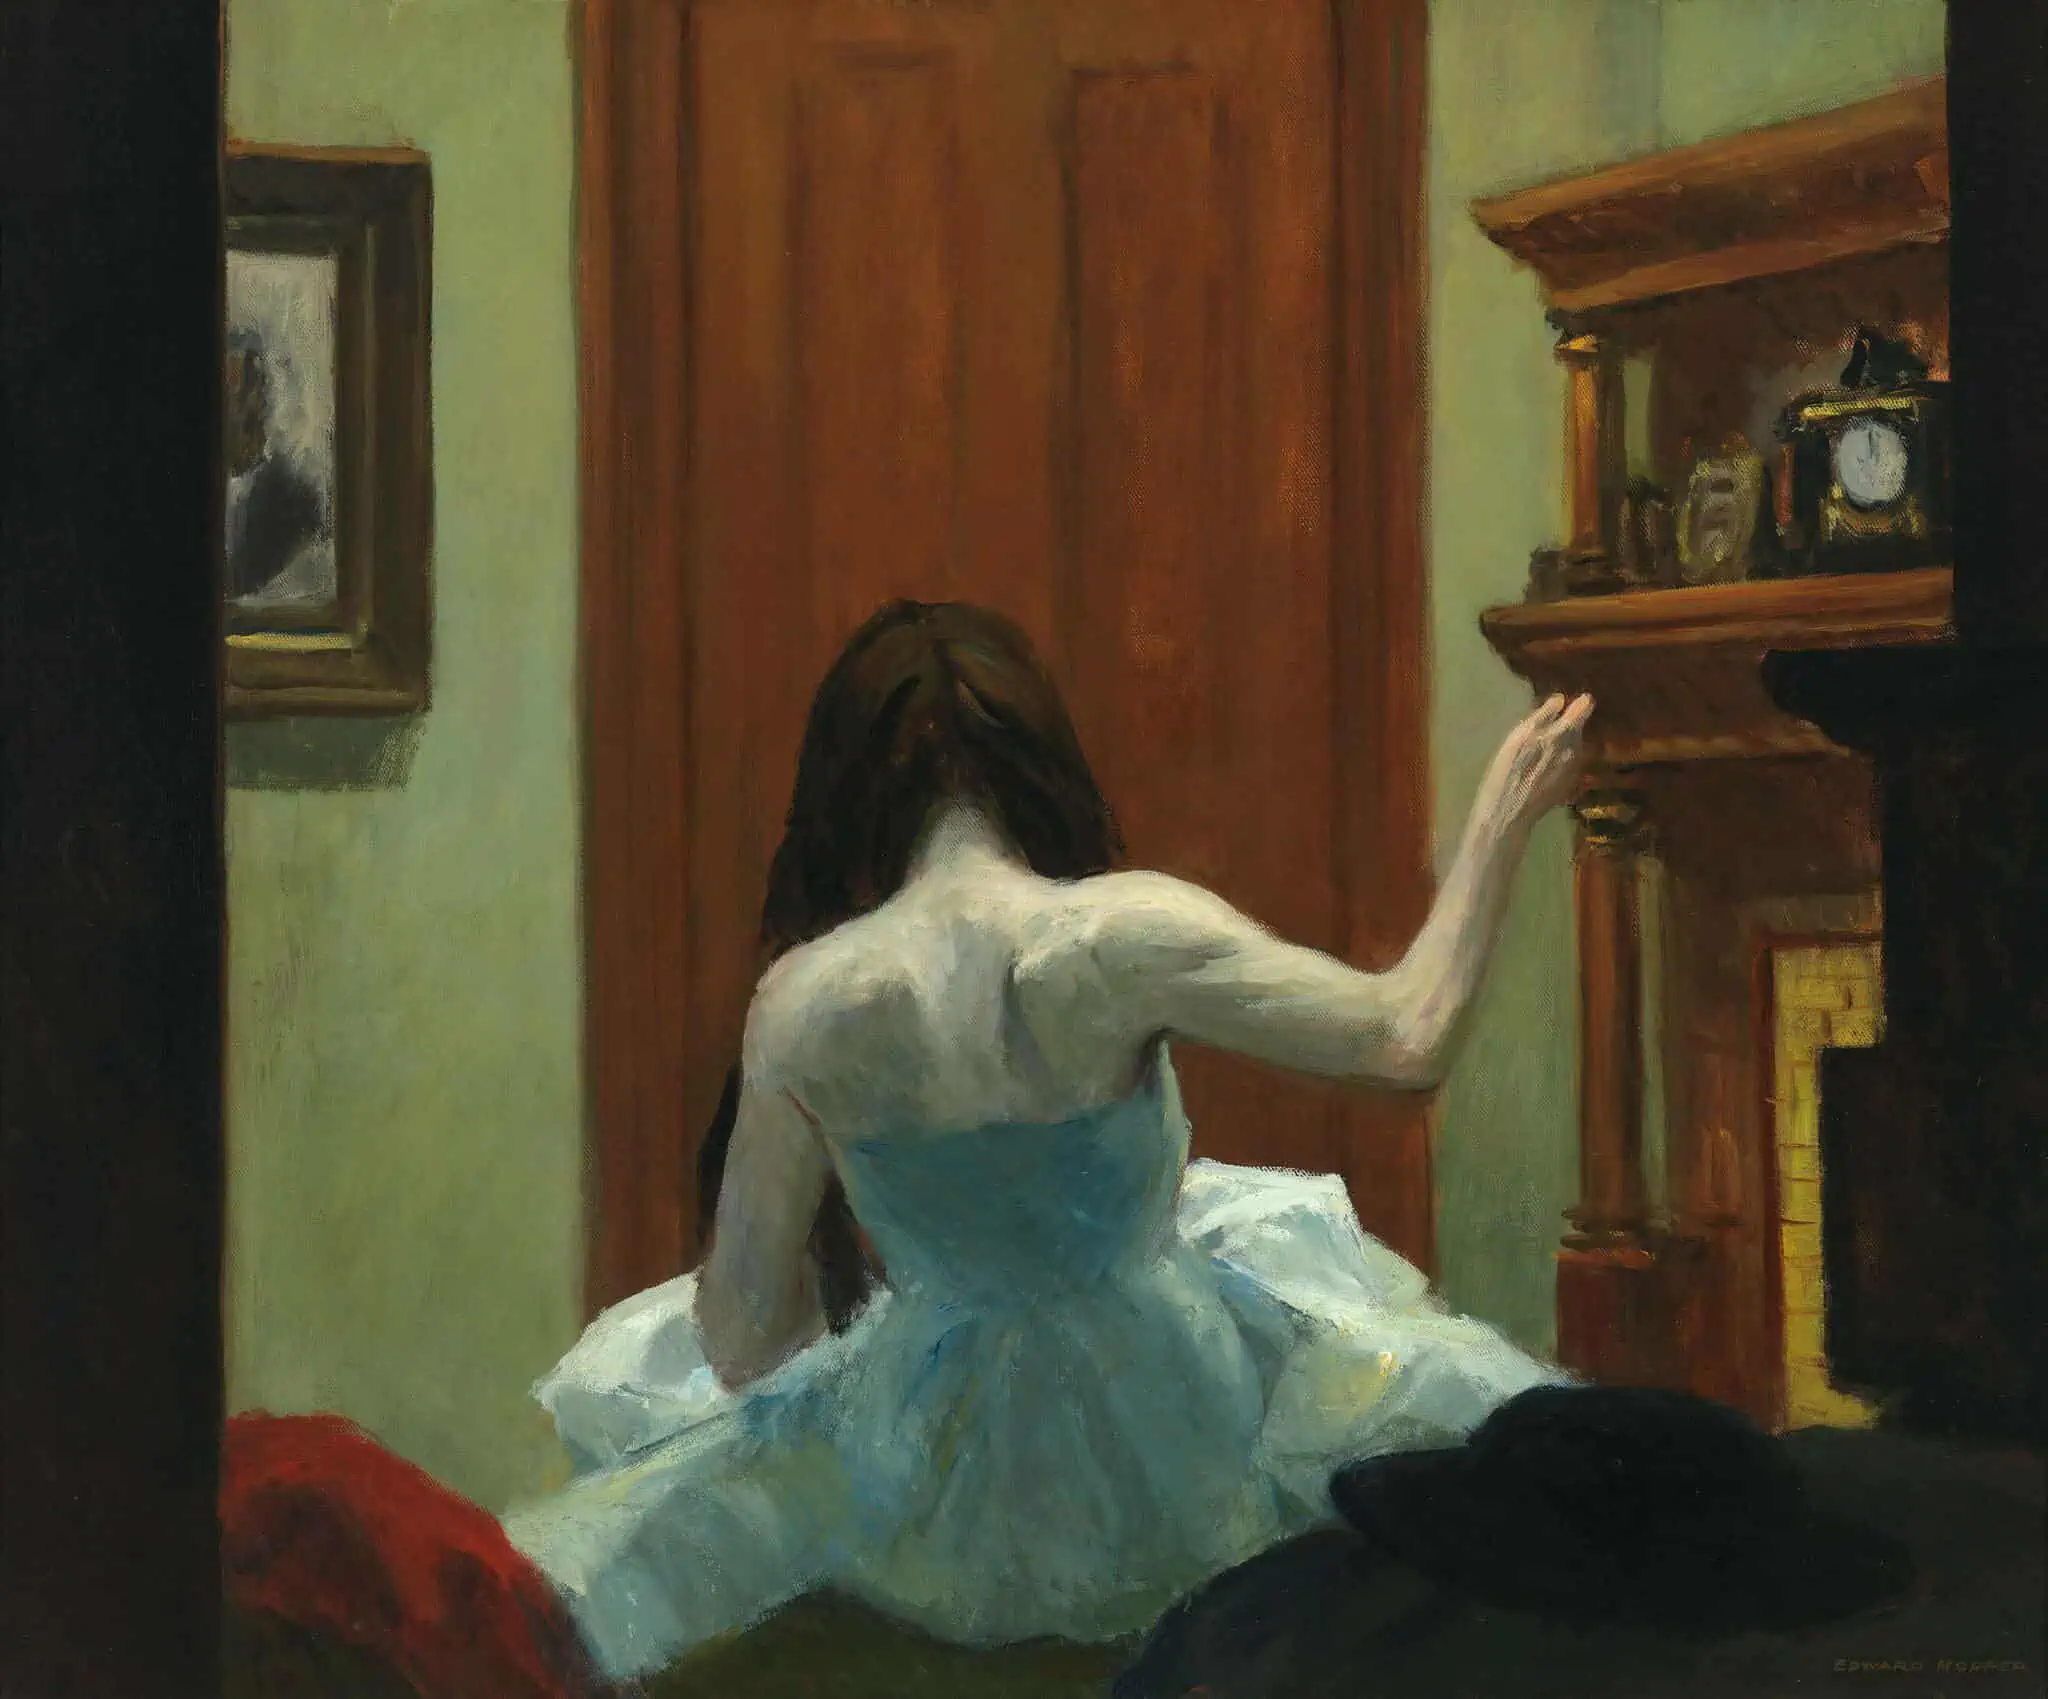 Edward Hopper presentato da elisa peano per studio21
